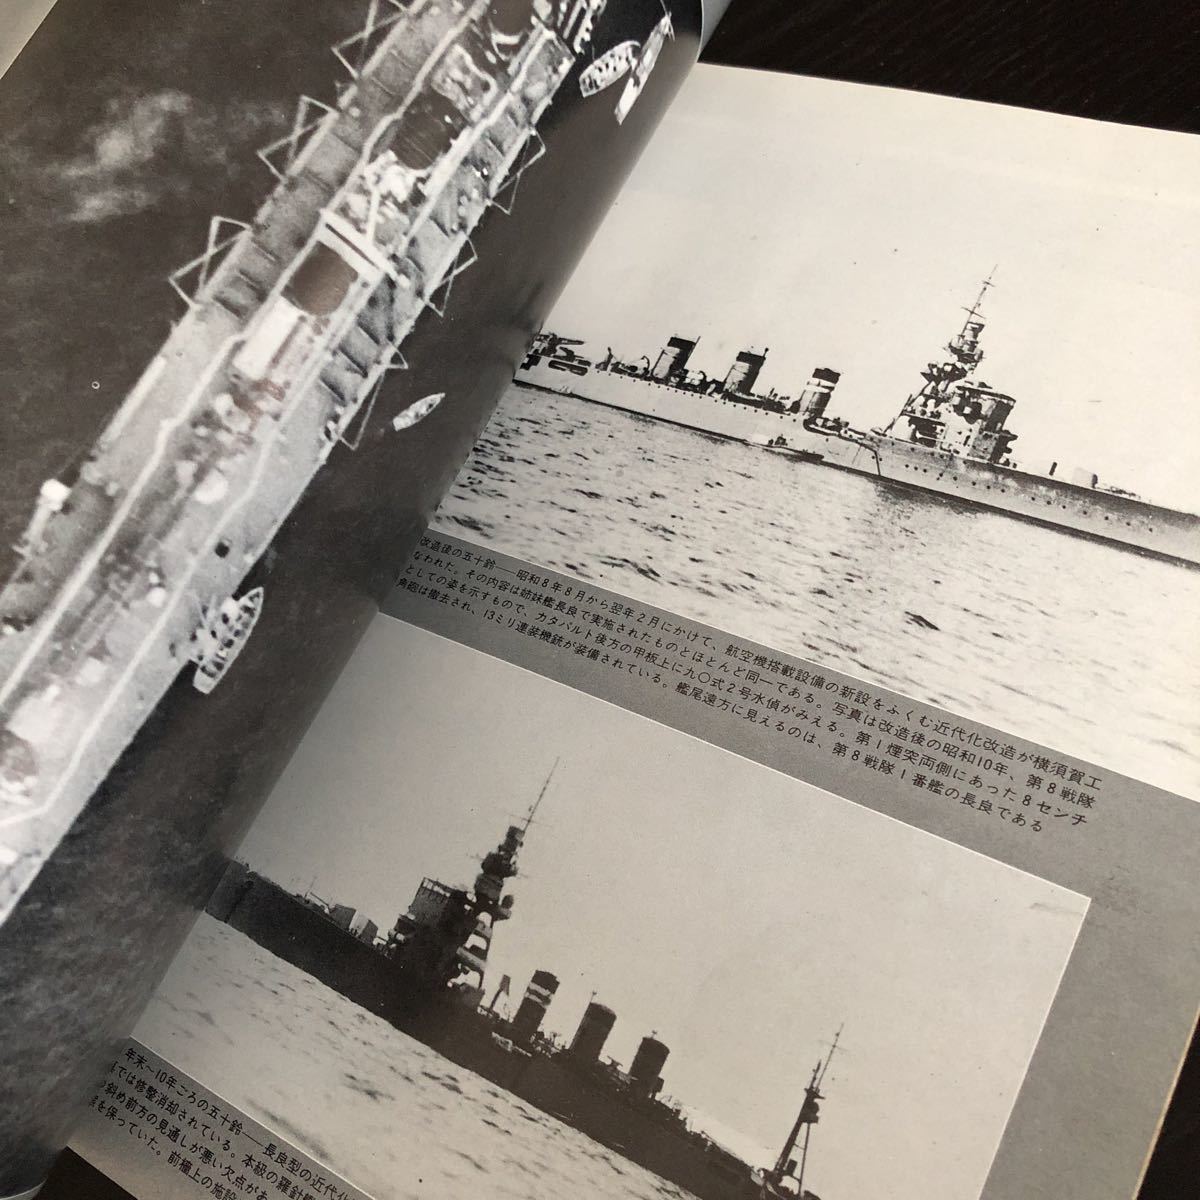 ル69 丸スペシャル 軽巡長良型Ⅰ 日本海軍艦艇シリーズ 昭和54年8月 1979年 日本海軍 軍艦 潜水艦 戦争 戦後 歴史 戦艦 特攻兵器 船 _画像6